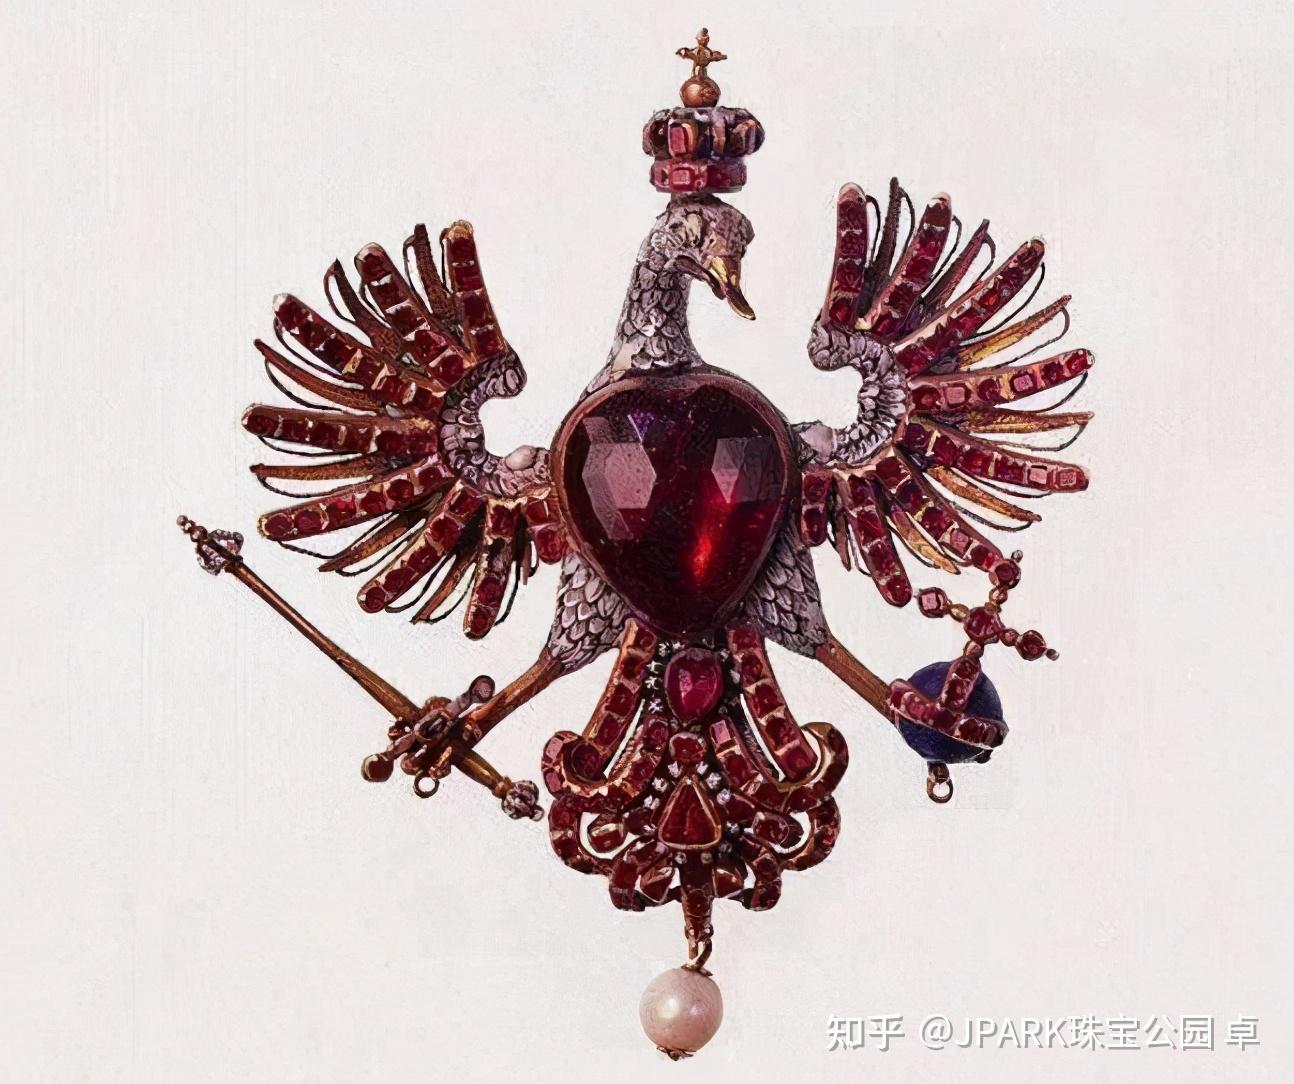 卢浮宫西翼迎最年轻中国艺术家：令西方珠宝界为之侧目的“FENG J”现象